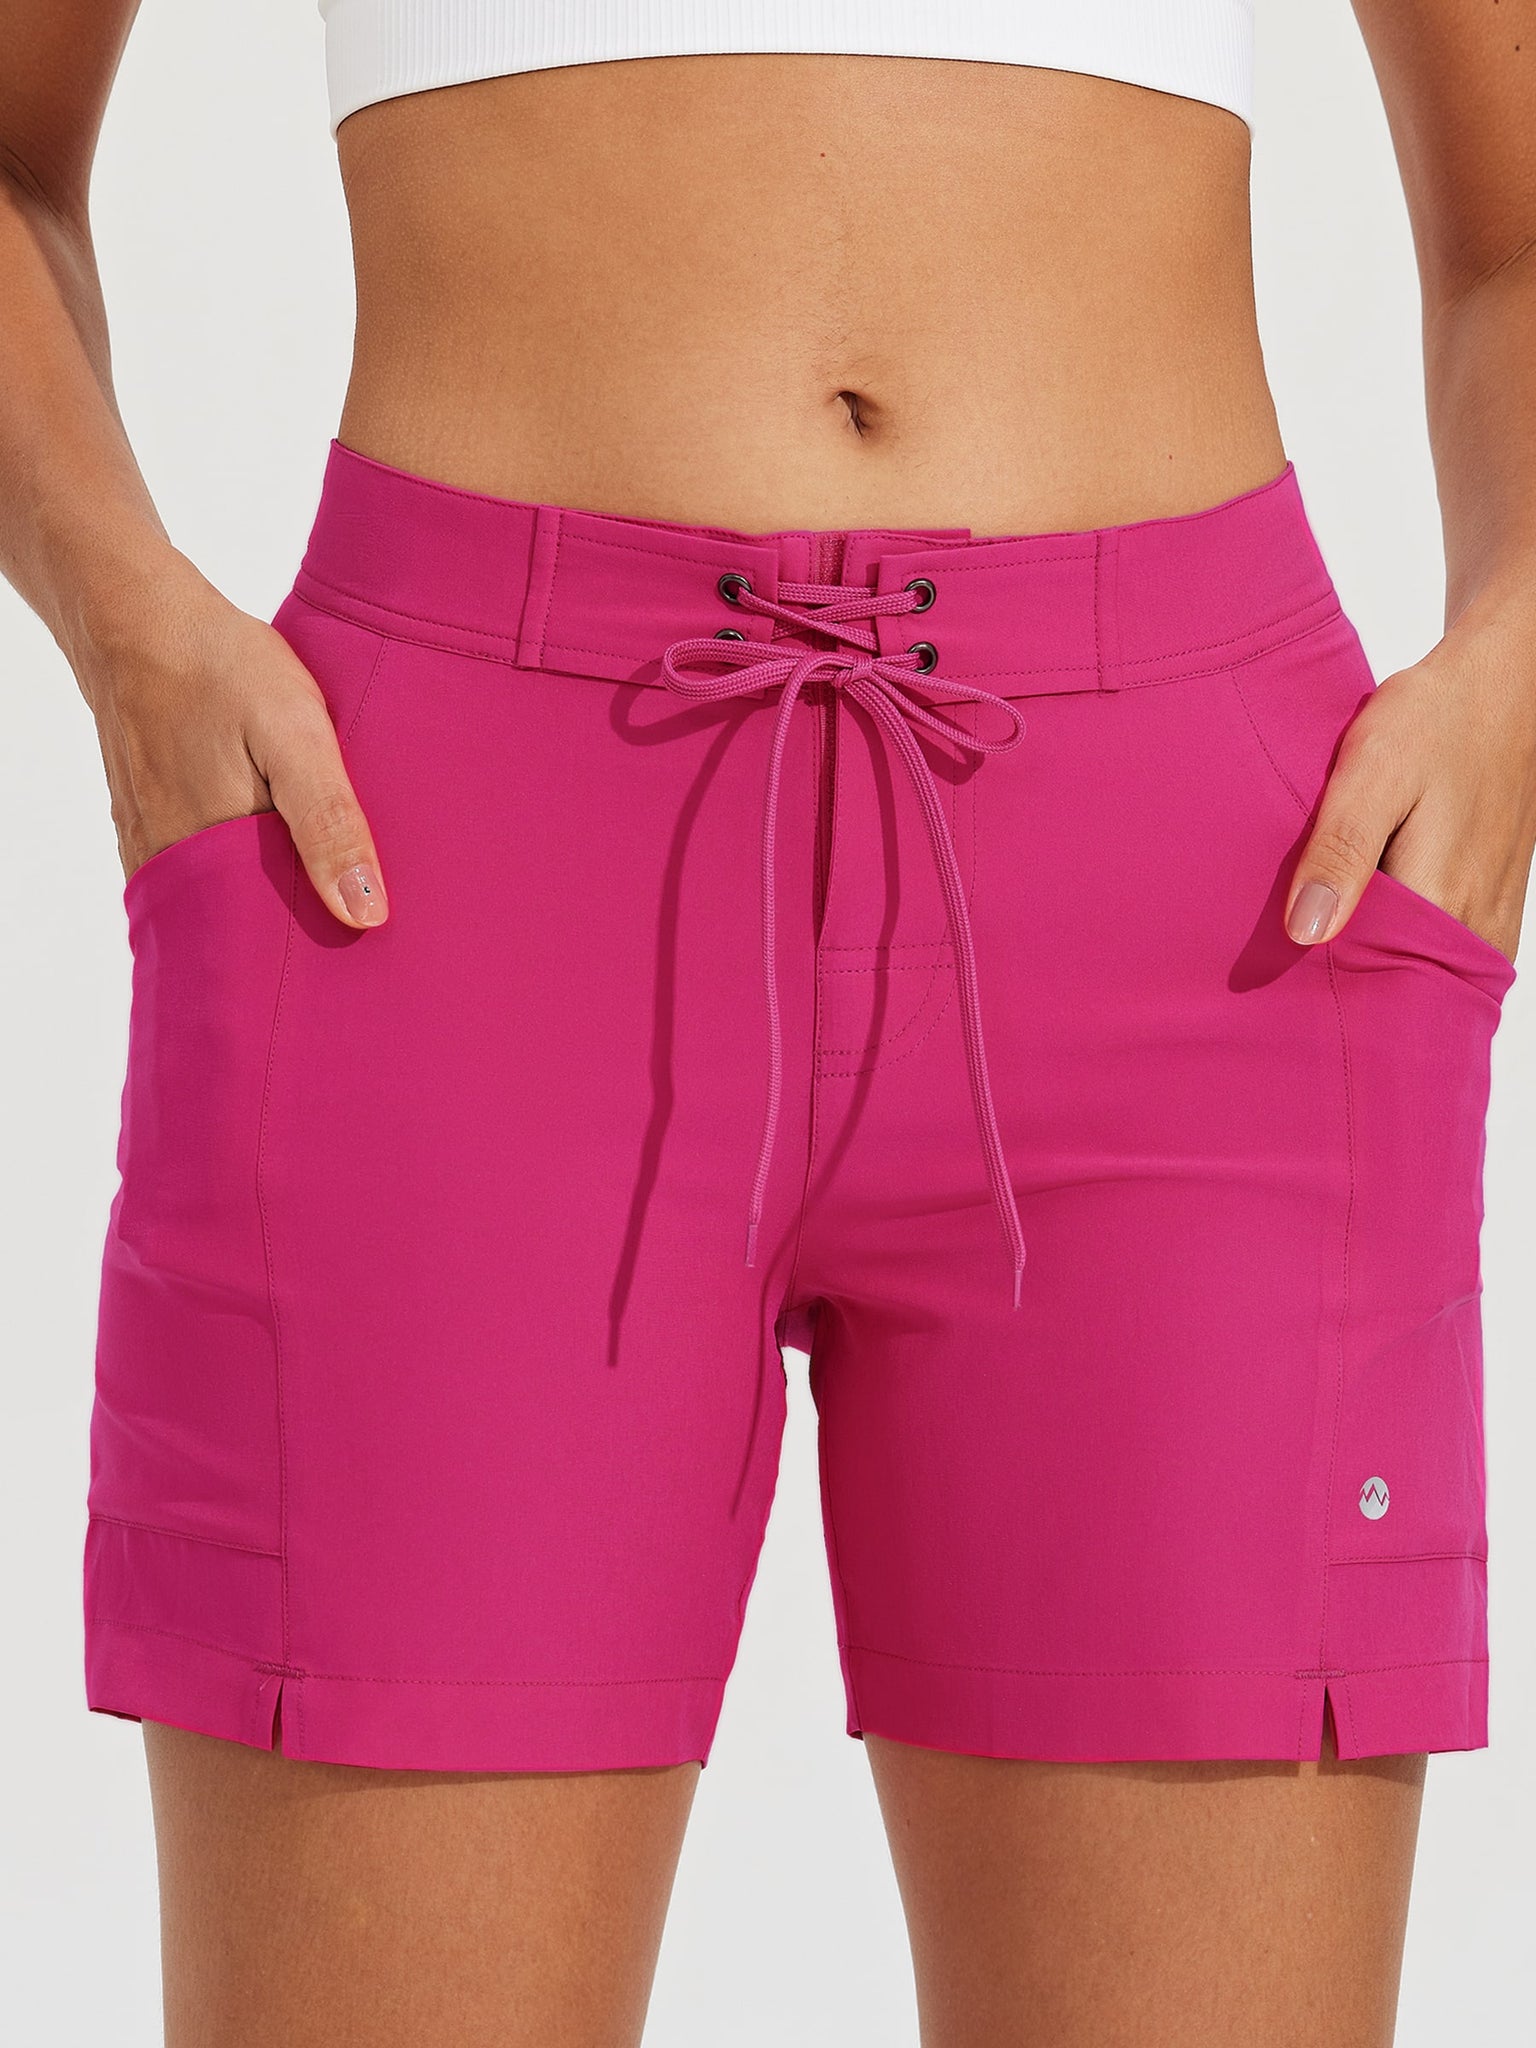 Women's Fixed Waist Board Shorts_Pink_model3